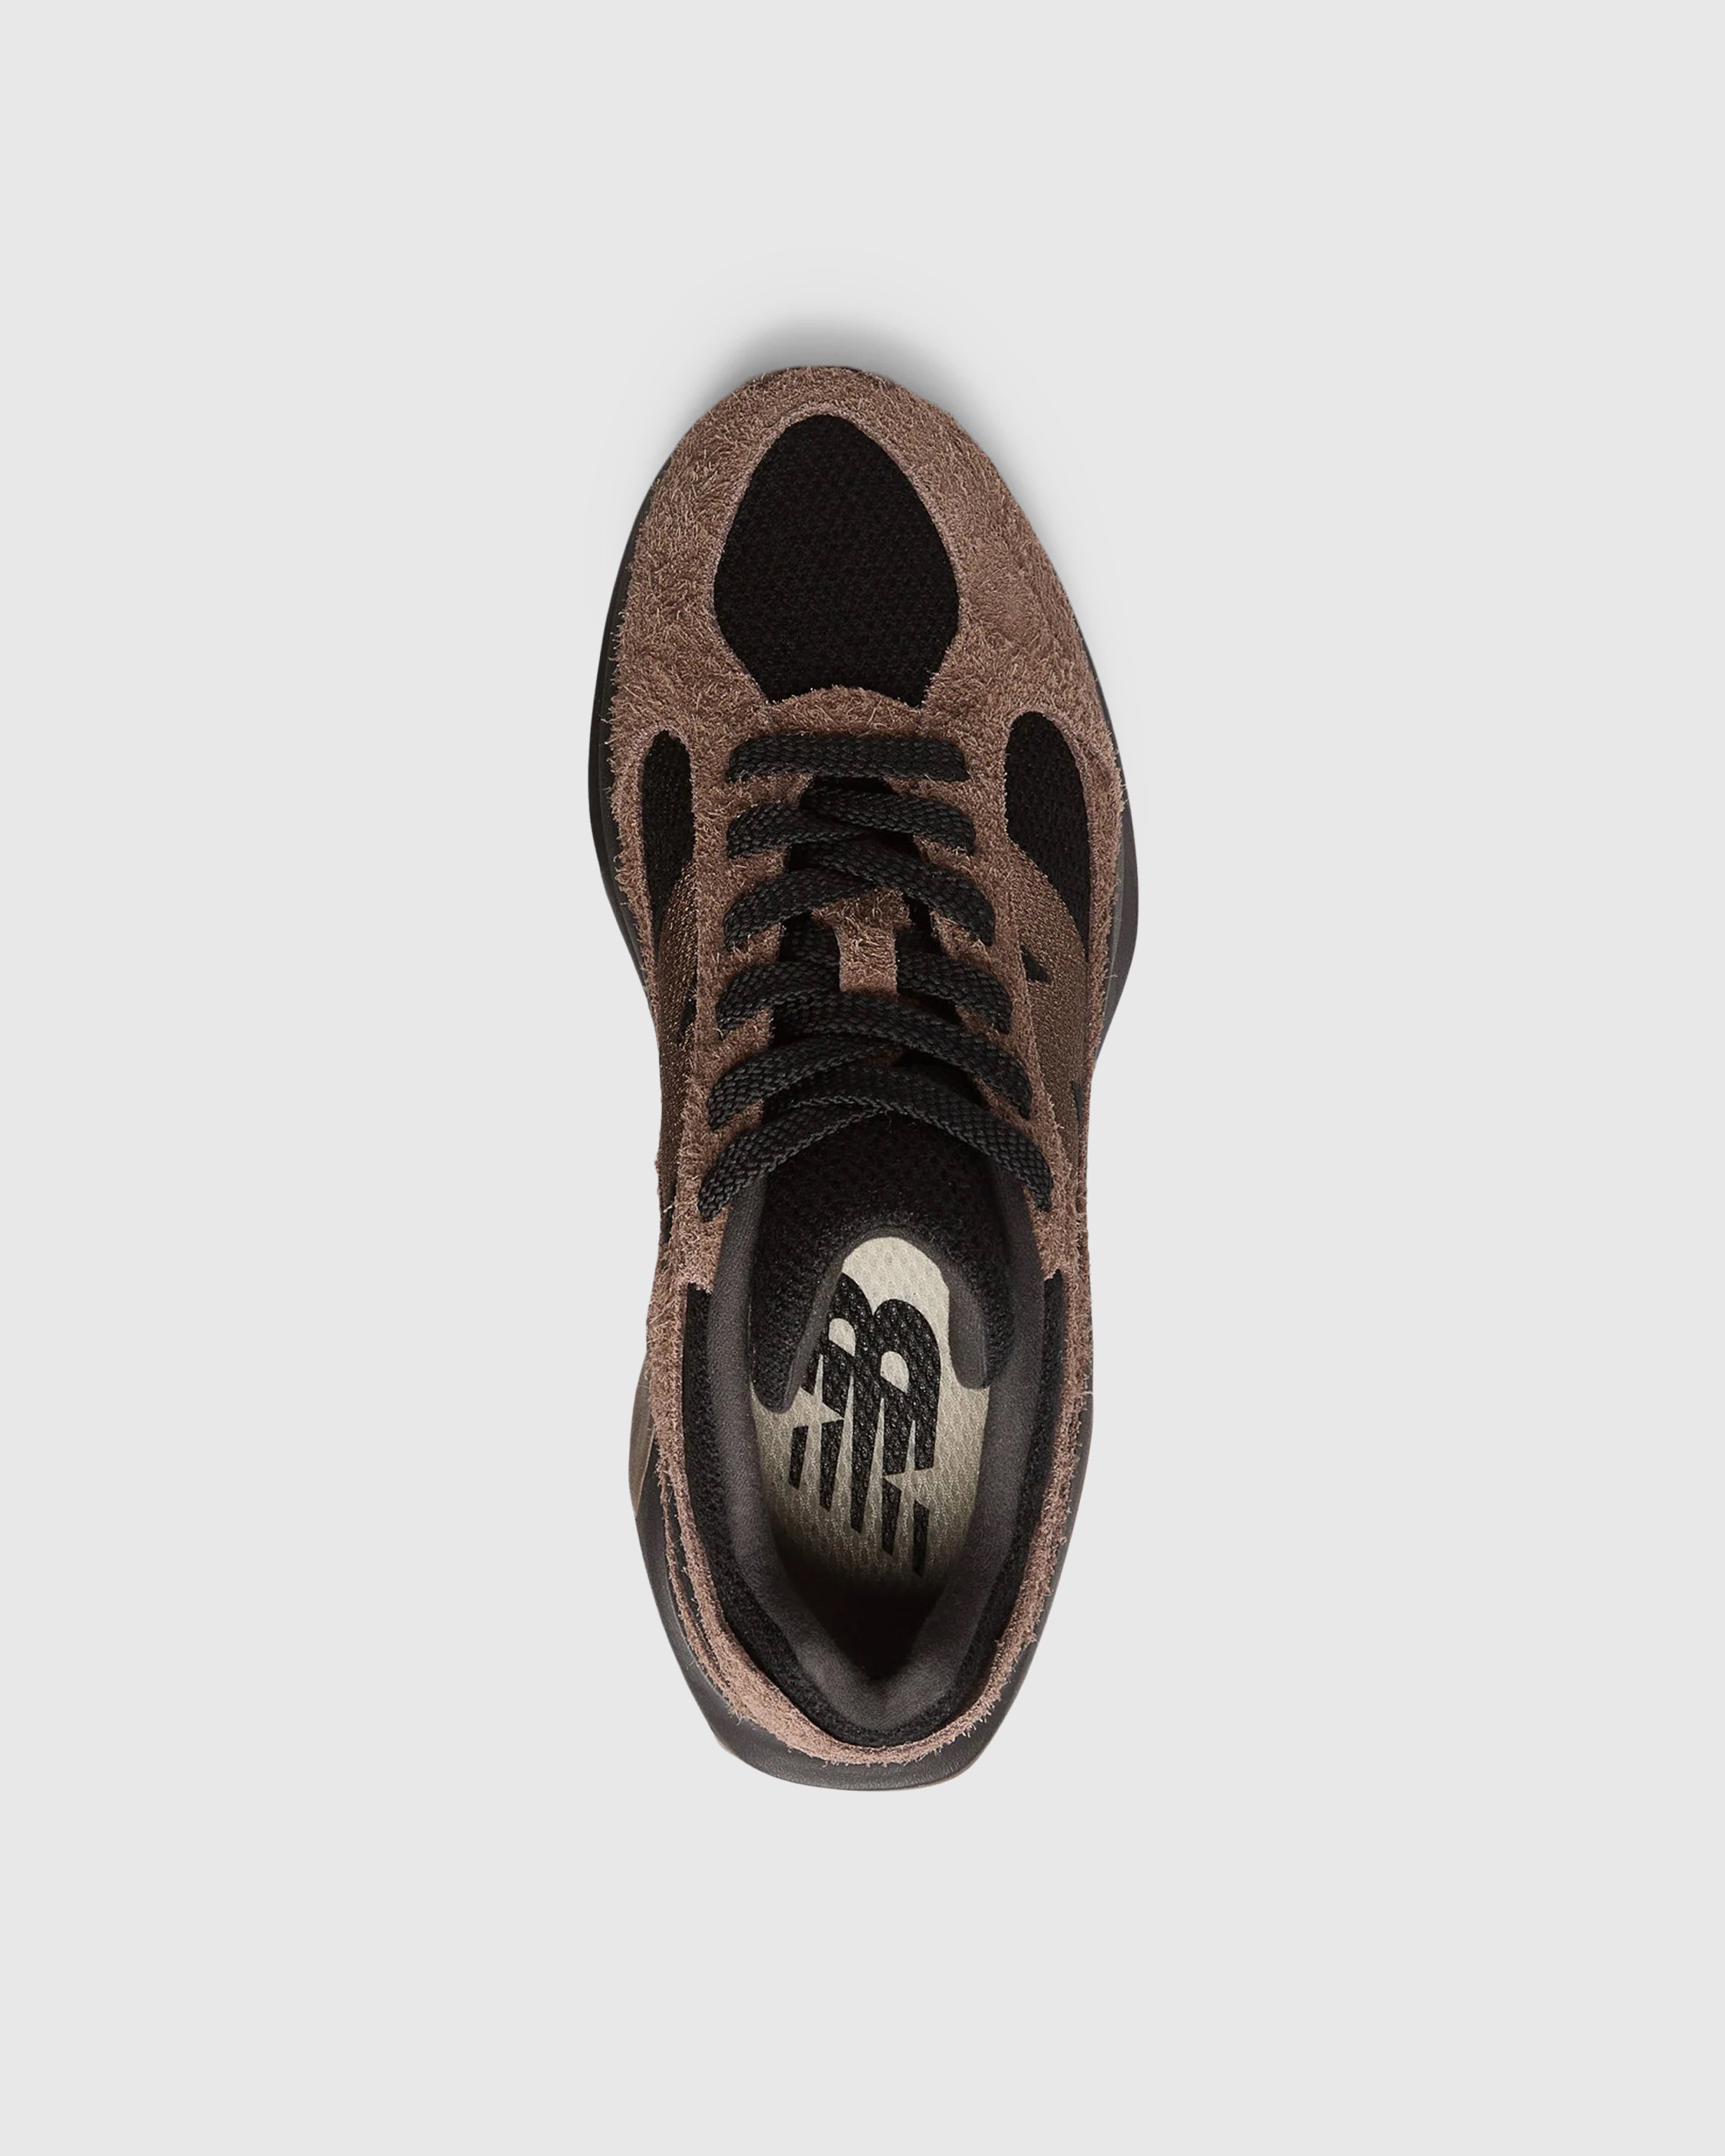 New Balance - WRPD Runner Dark Mushroom - Footwear - Brown - Image 5